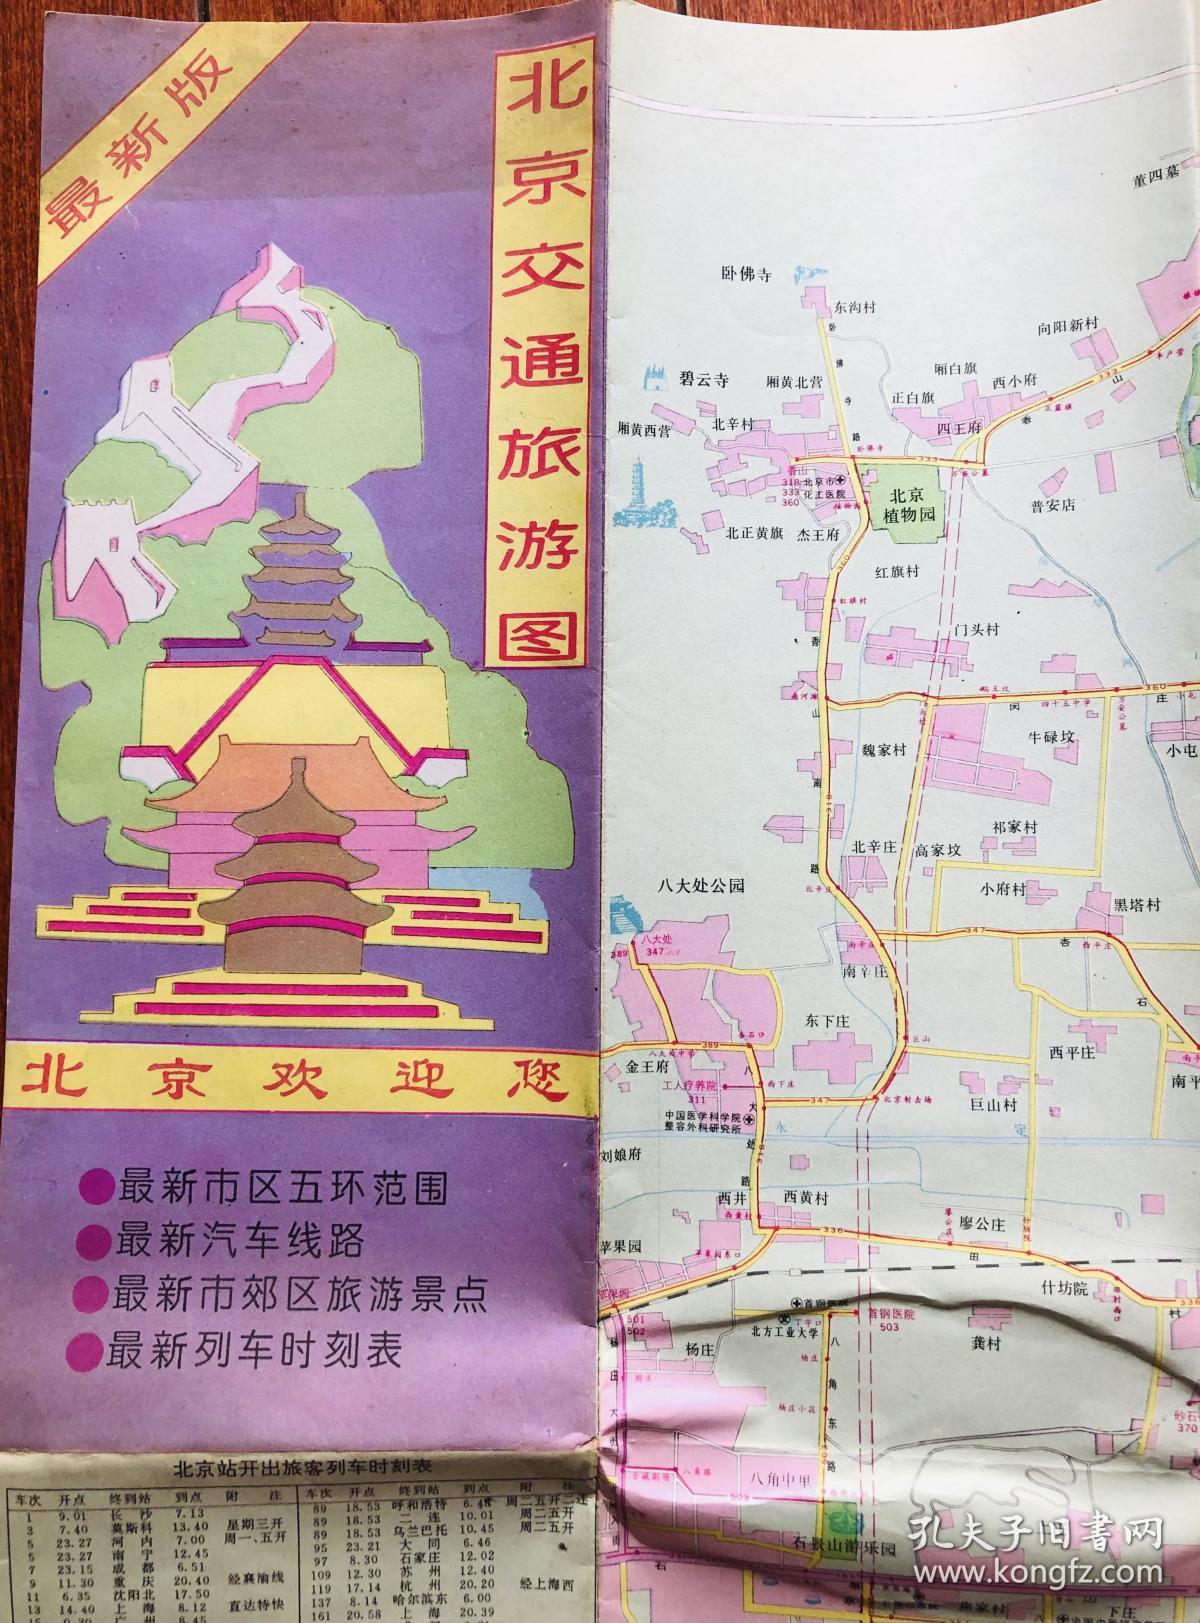 北京交通游览图1994年版  北京地图  收藏